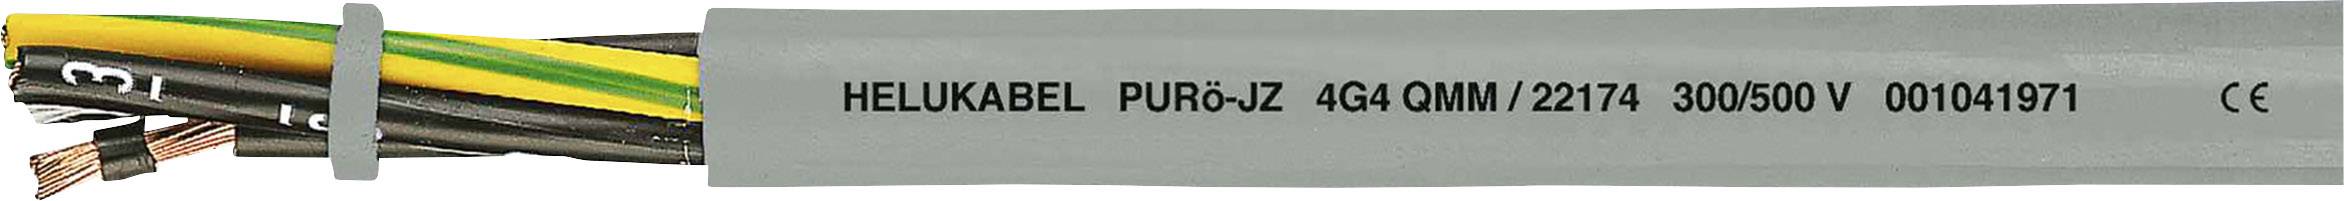 HELUKABEL PURö-JZ Steuerleitung 3 G 1.50 mm² Grau 22149-1000 1000 m